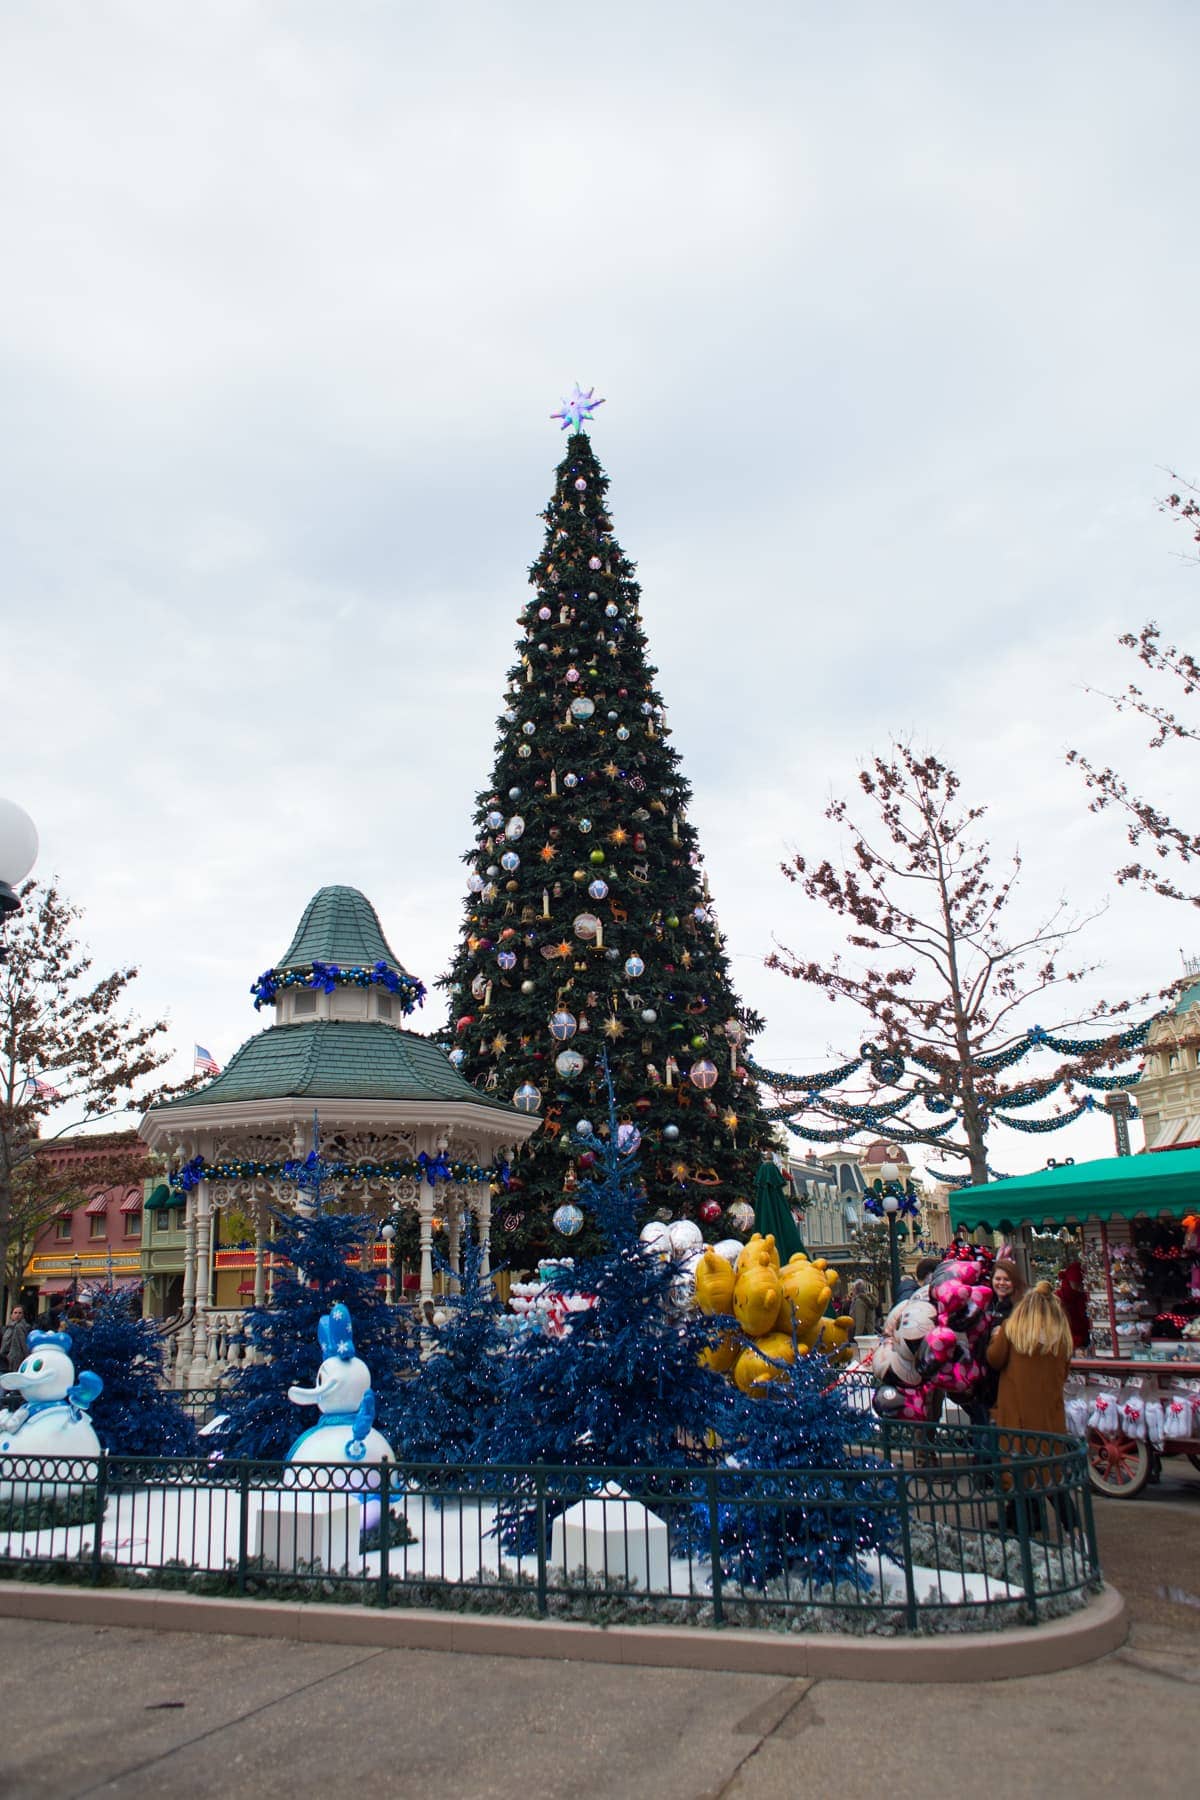 Christmas tree in Disneyland Paris